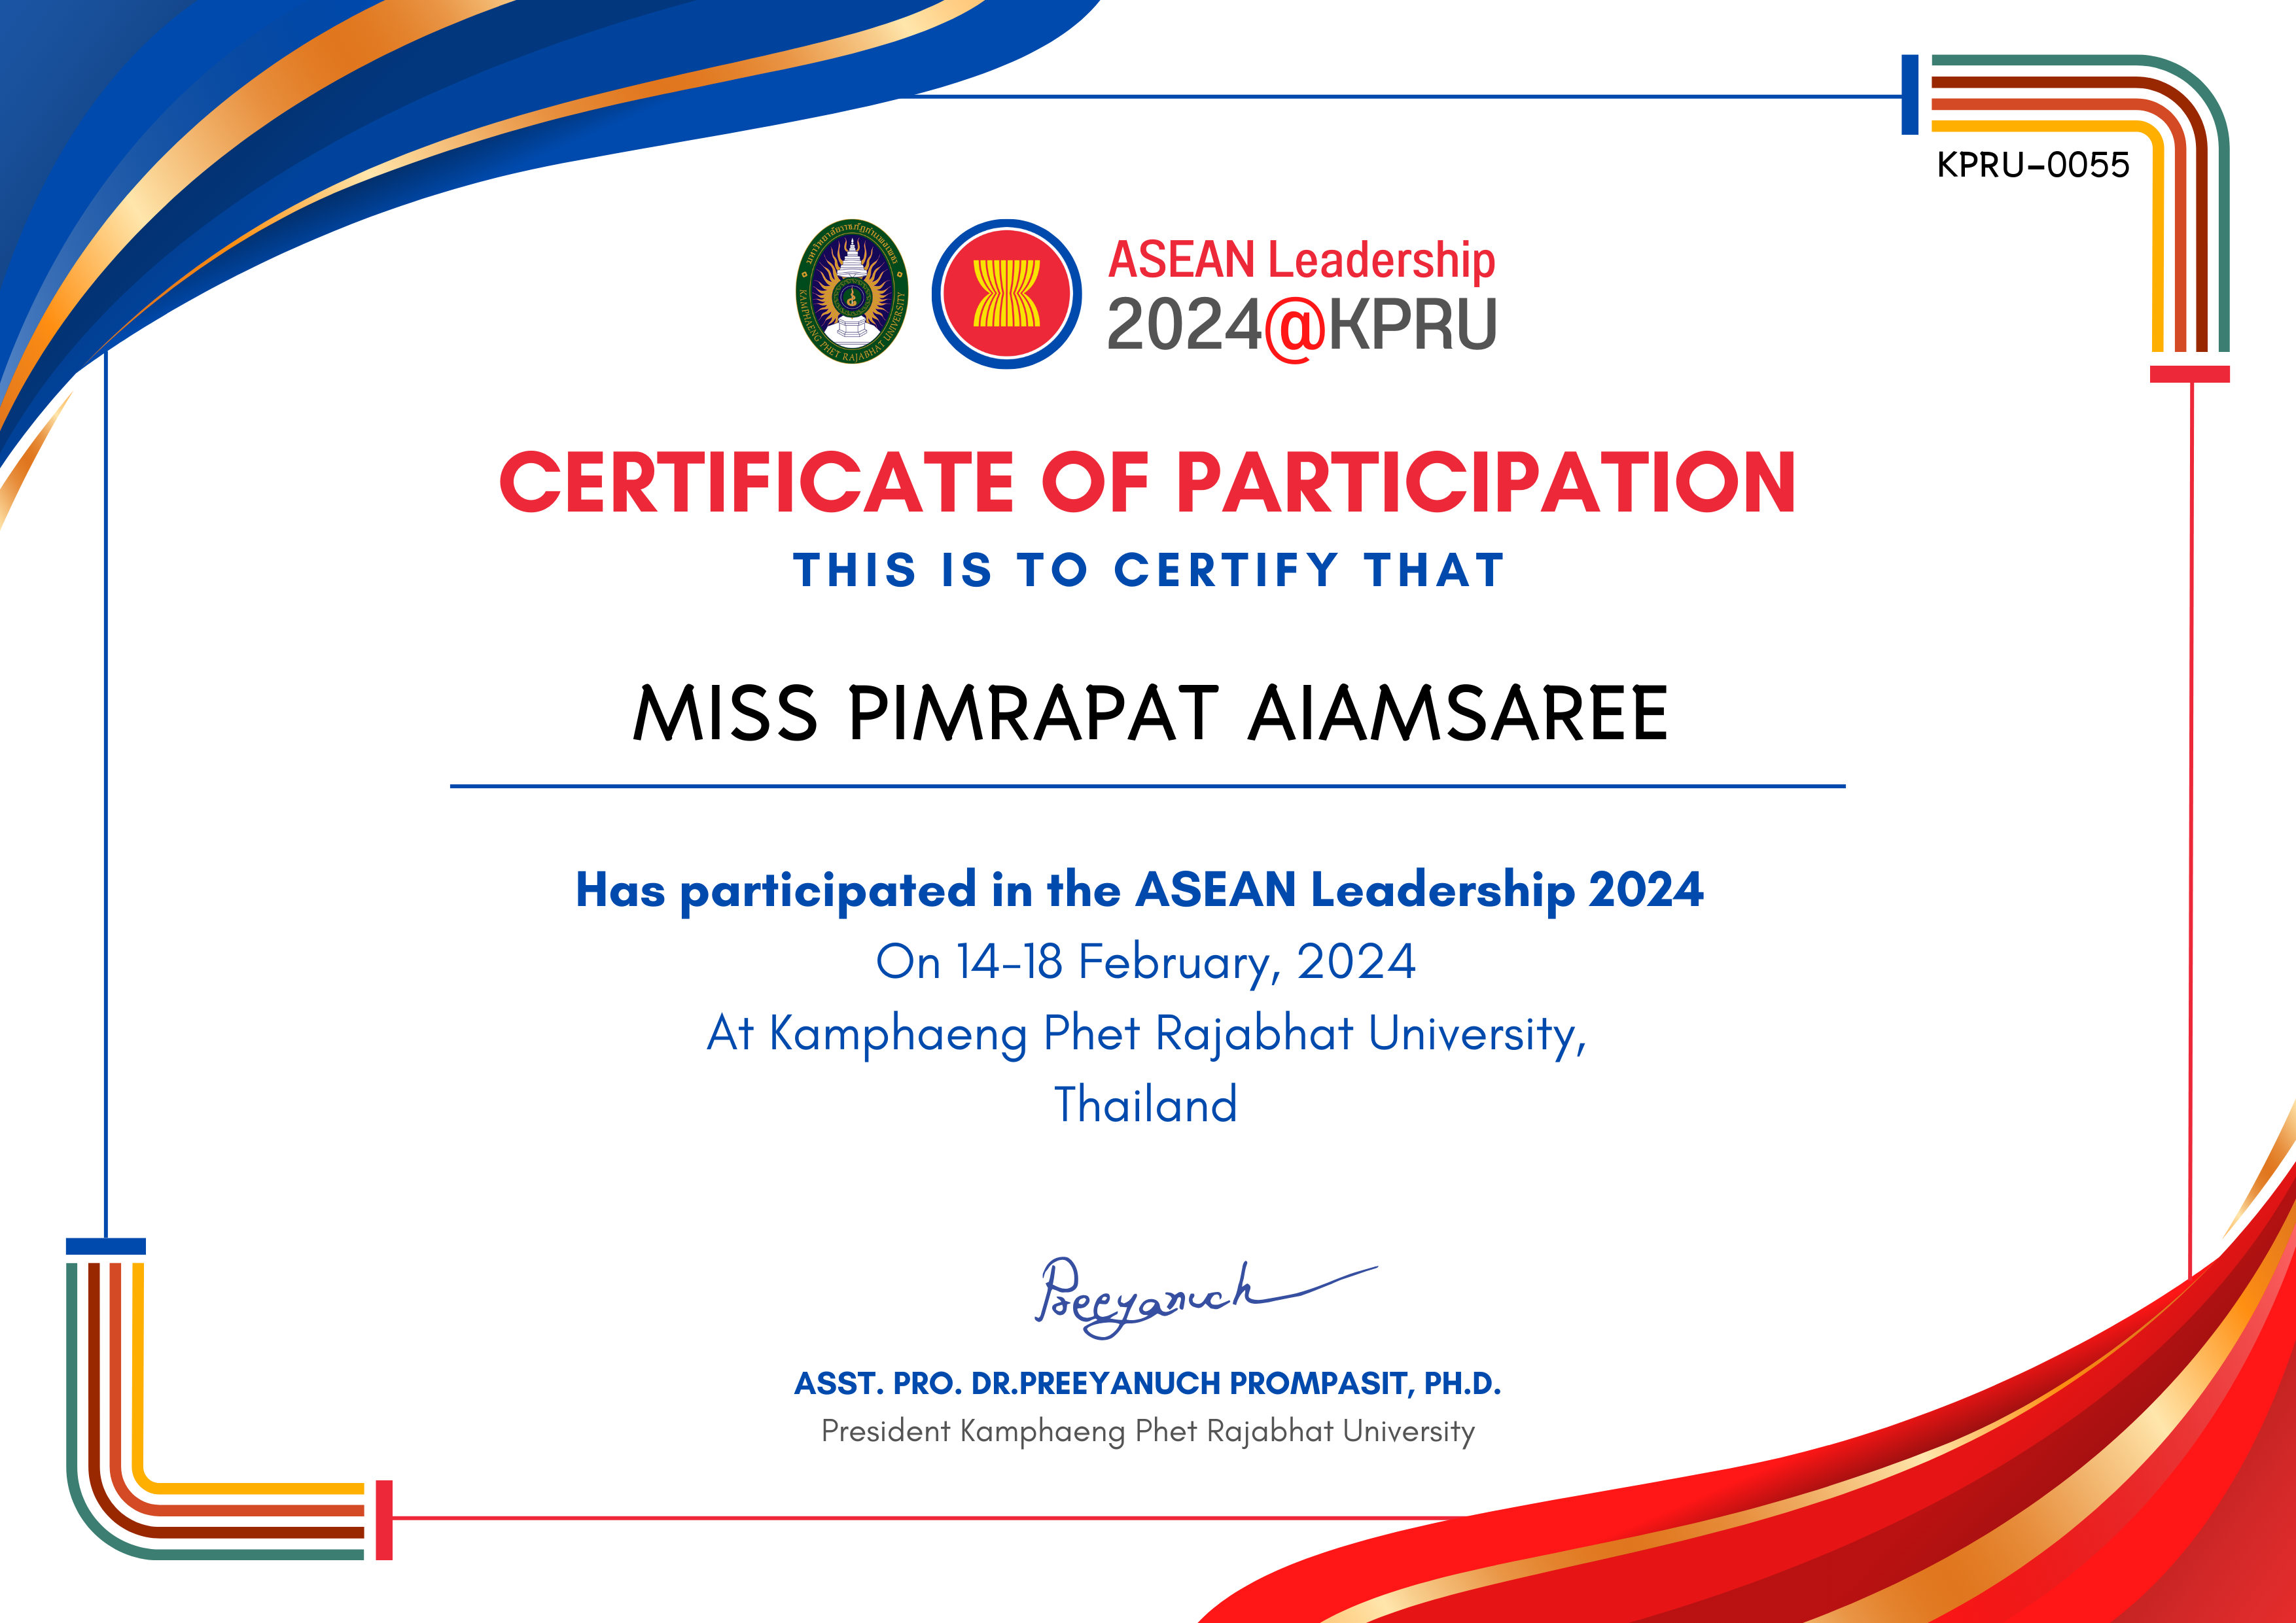 เกียรติบัตร ASEAN Leadership 2024-participated ของ MISS PIMRAPAT AIAMSAREE